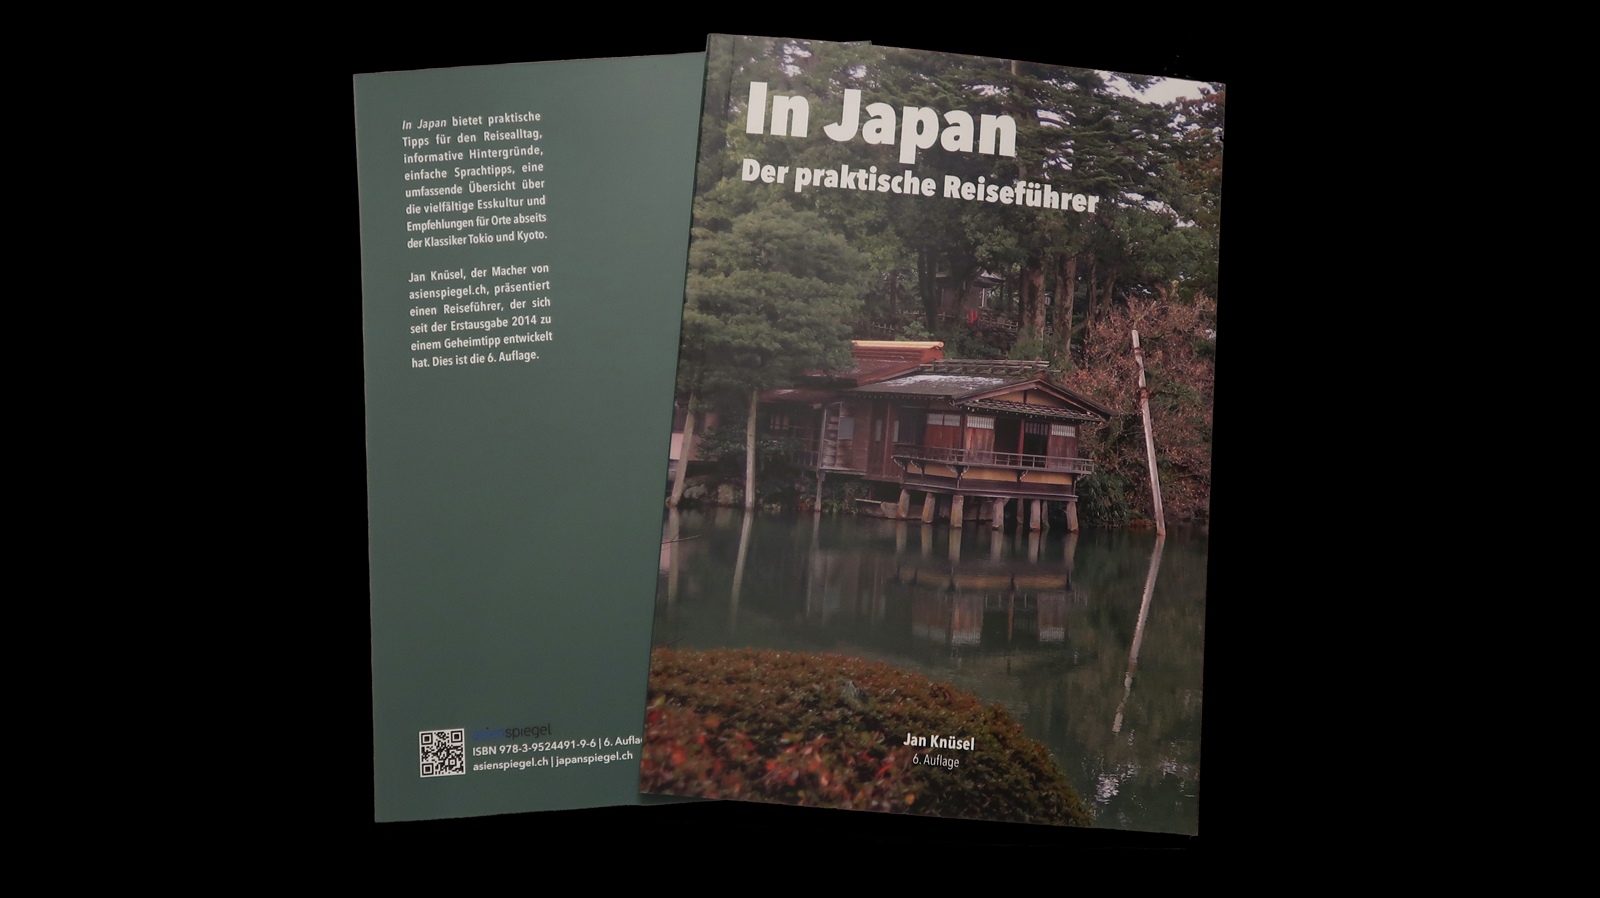 Das Cover der 6. Auflage (Edition 2020) von "In Japan".